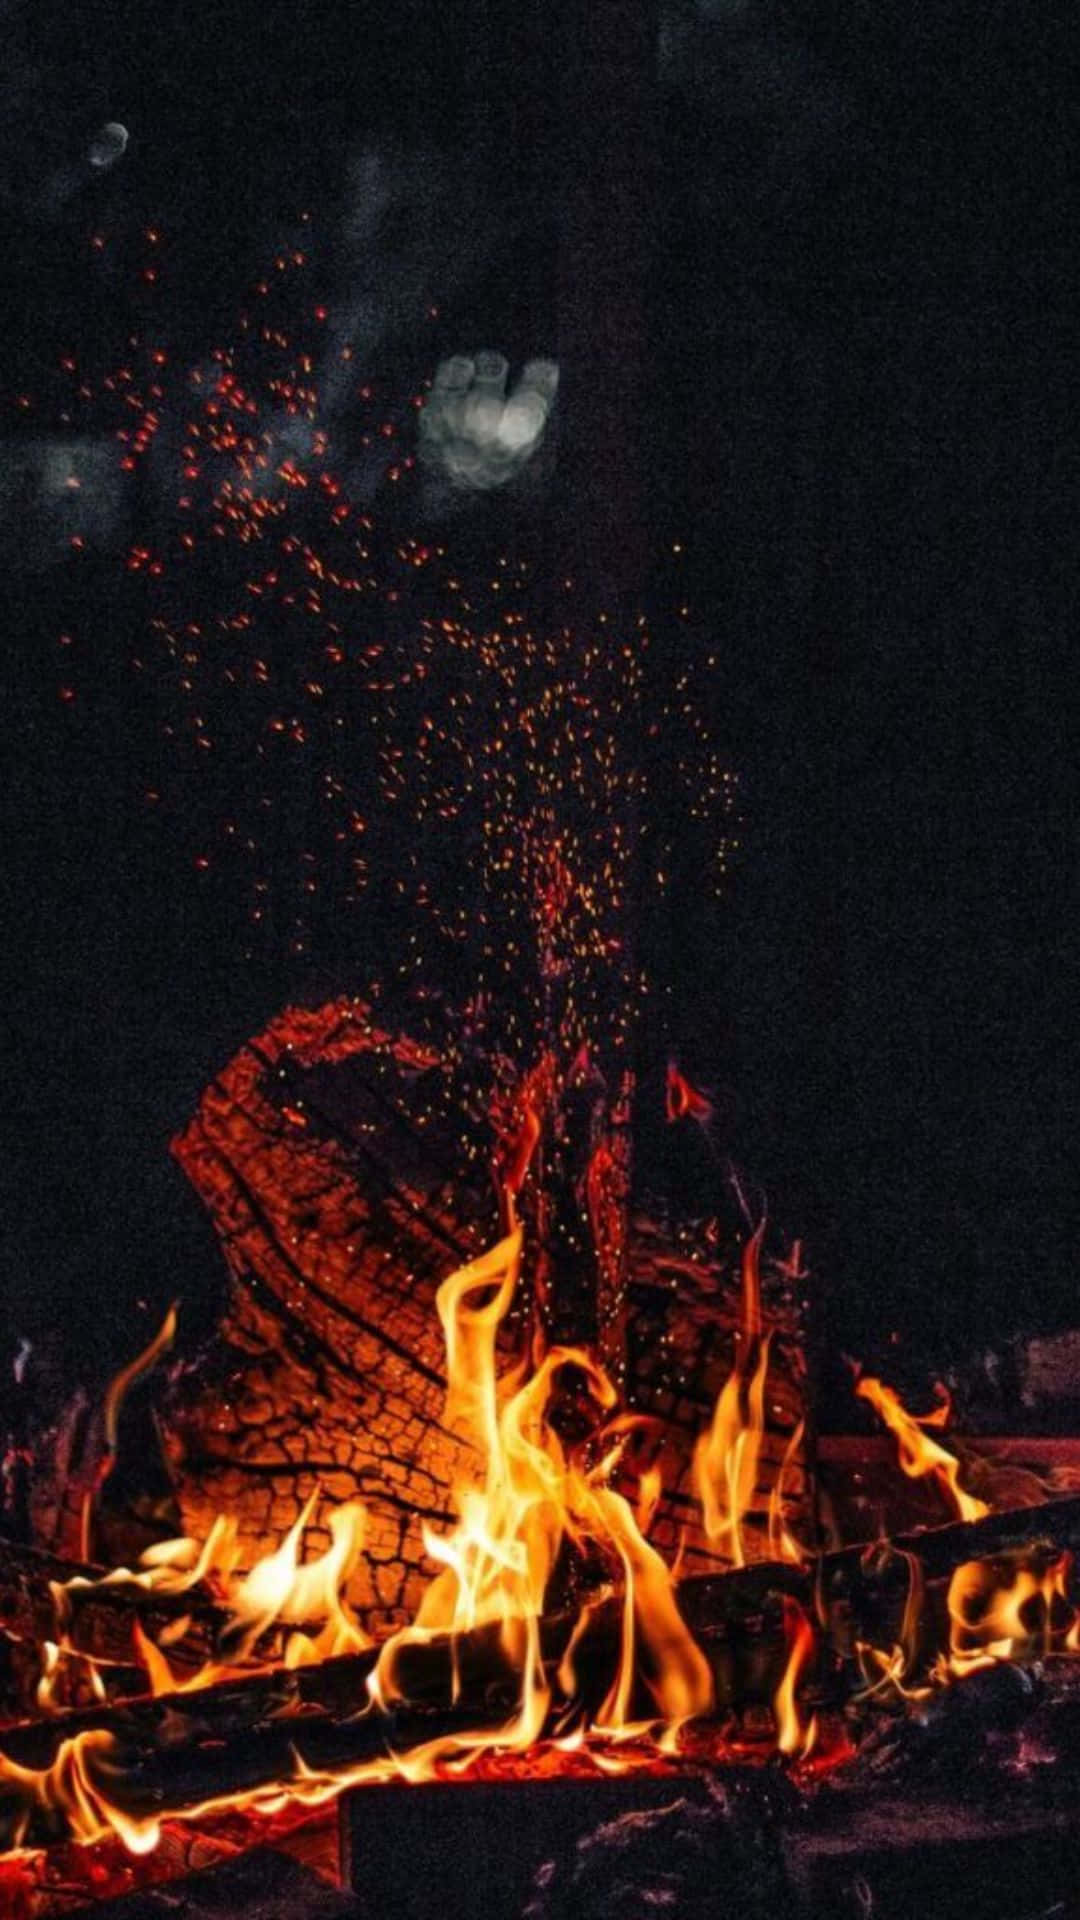 Tag et øjeblik og varm dig selv i flammerne fra en rolig lejrbål. Wallpaper